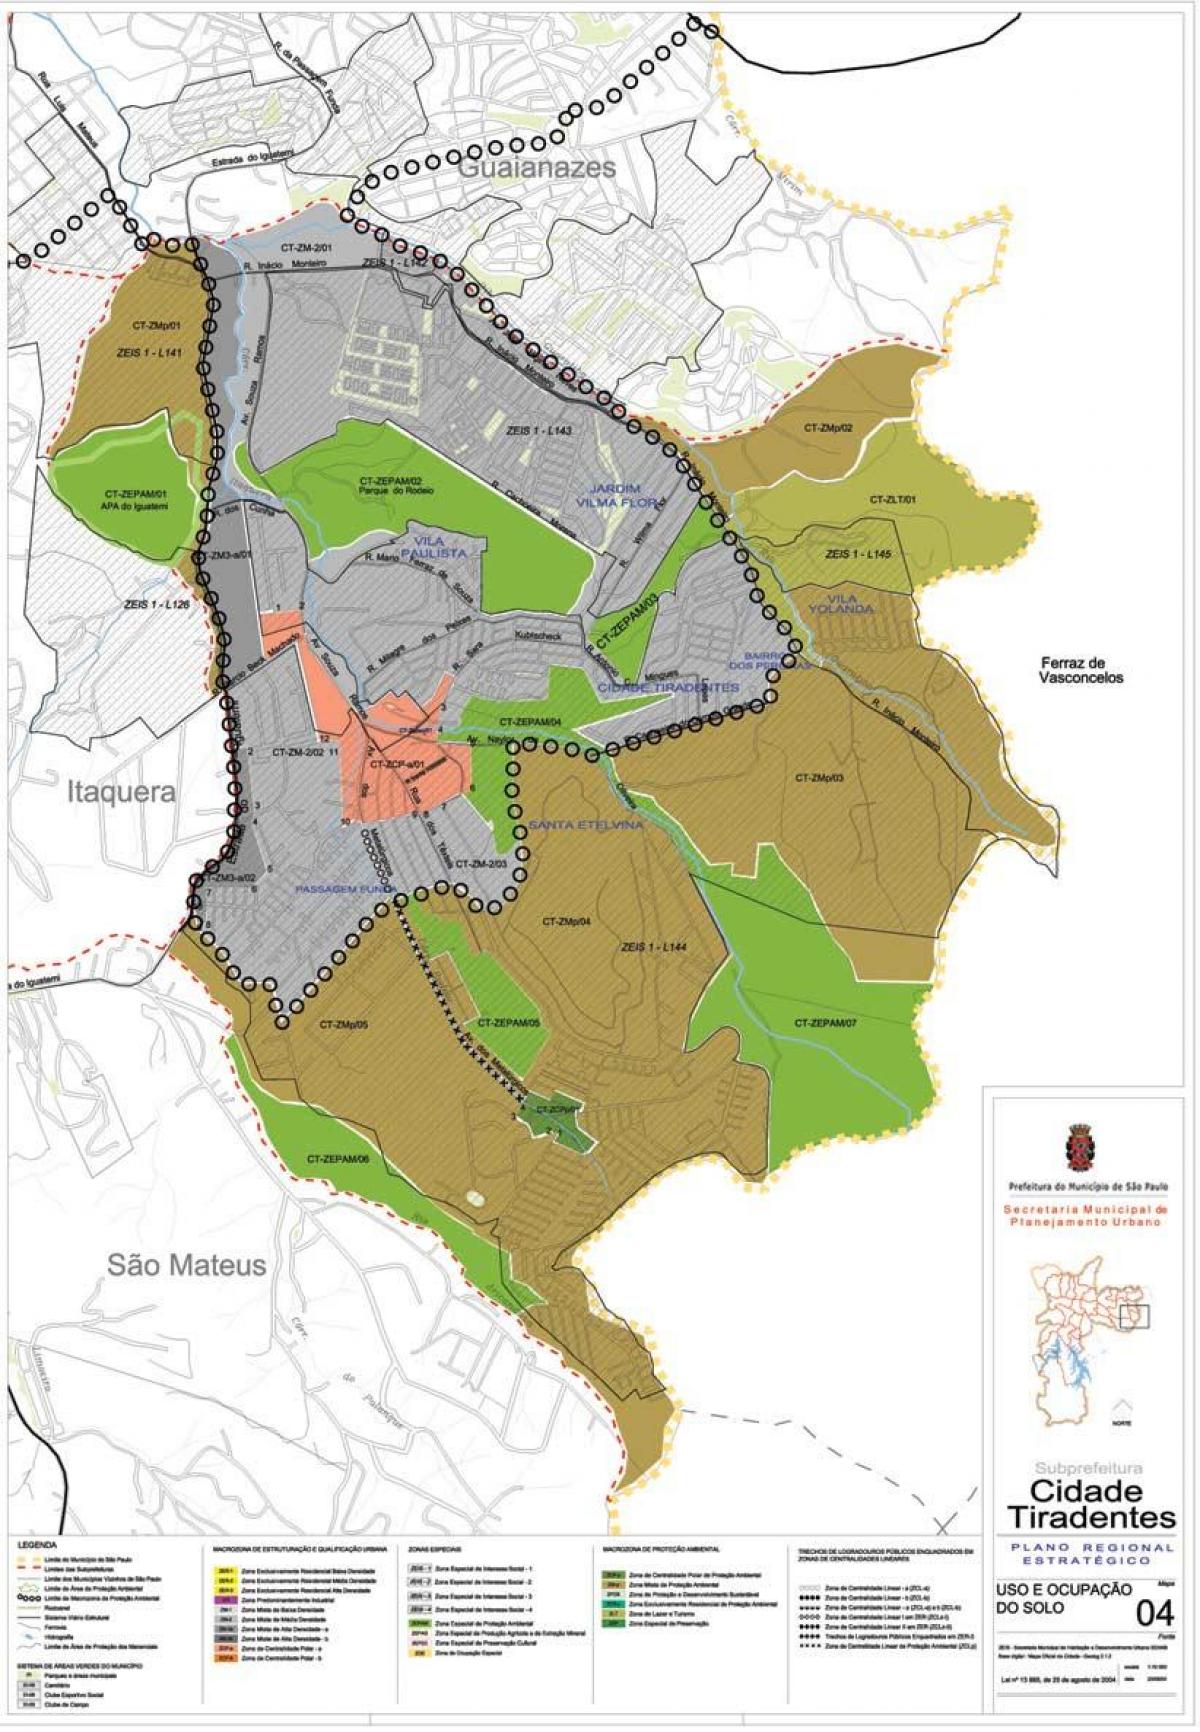 Kort over Cidade Tiradentes-São Paulo - Besættelse af jord